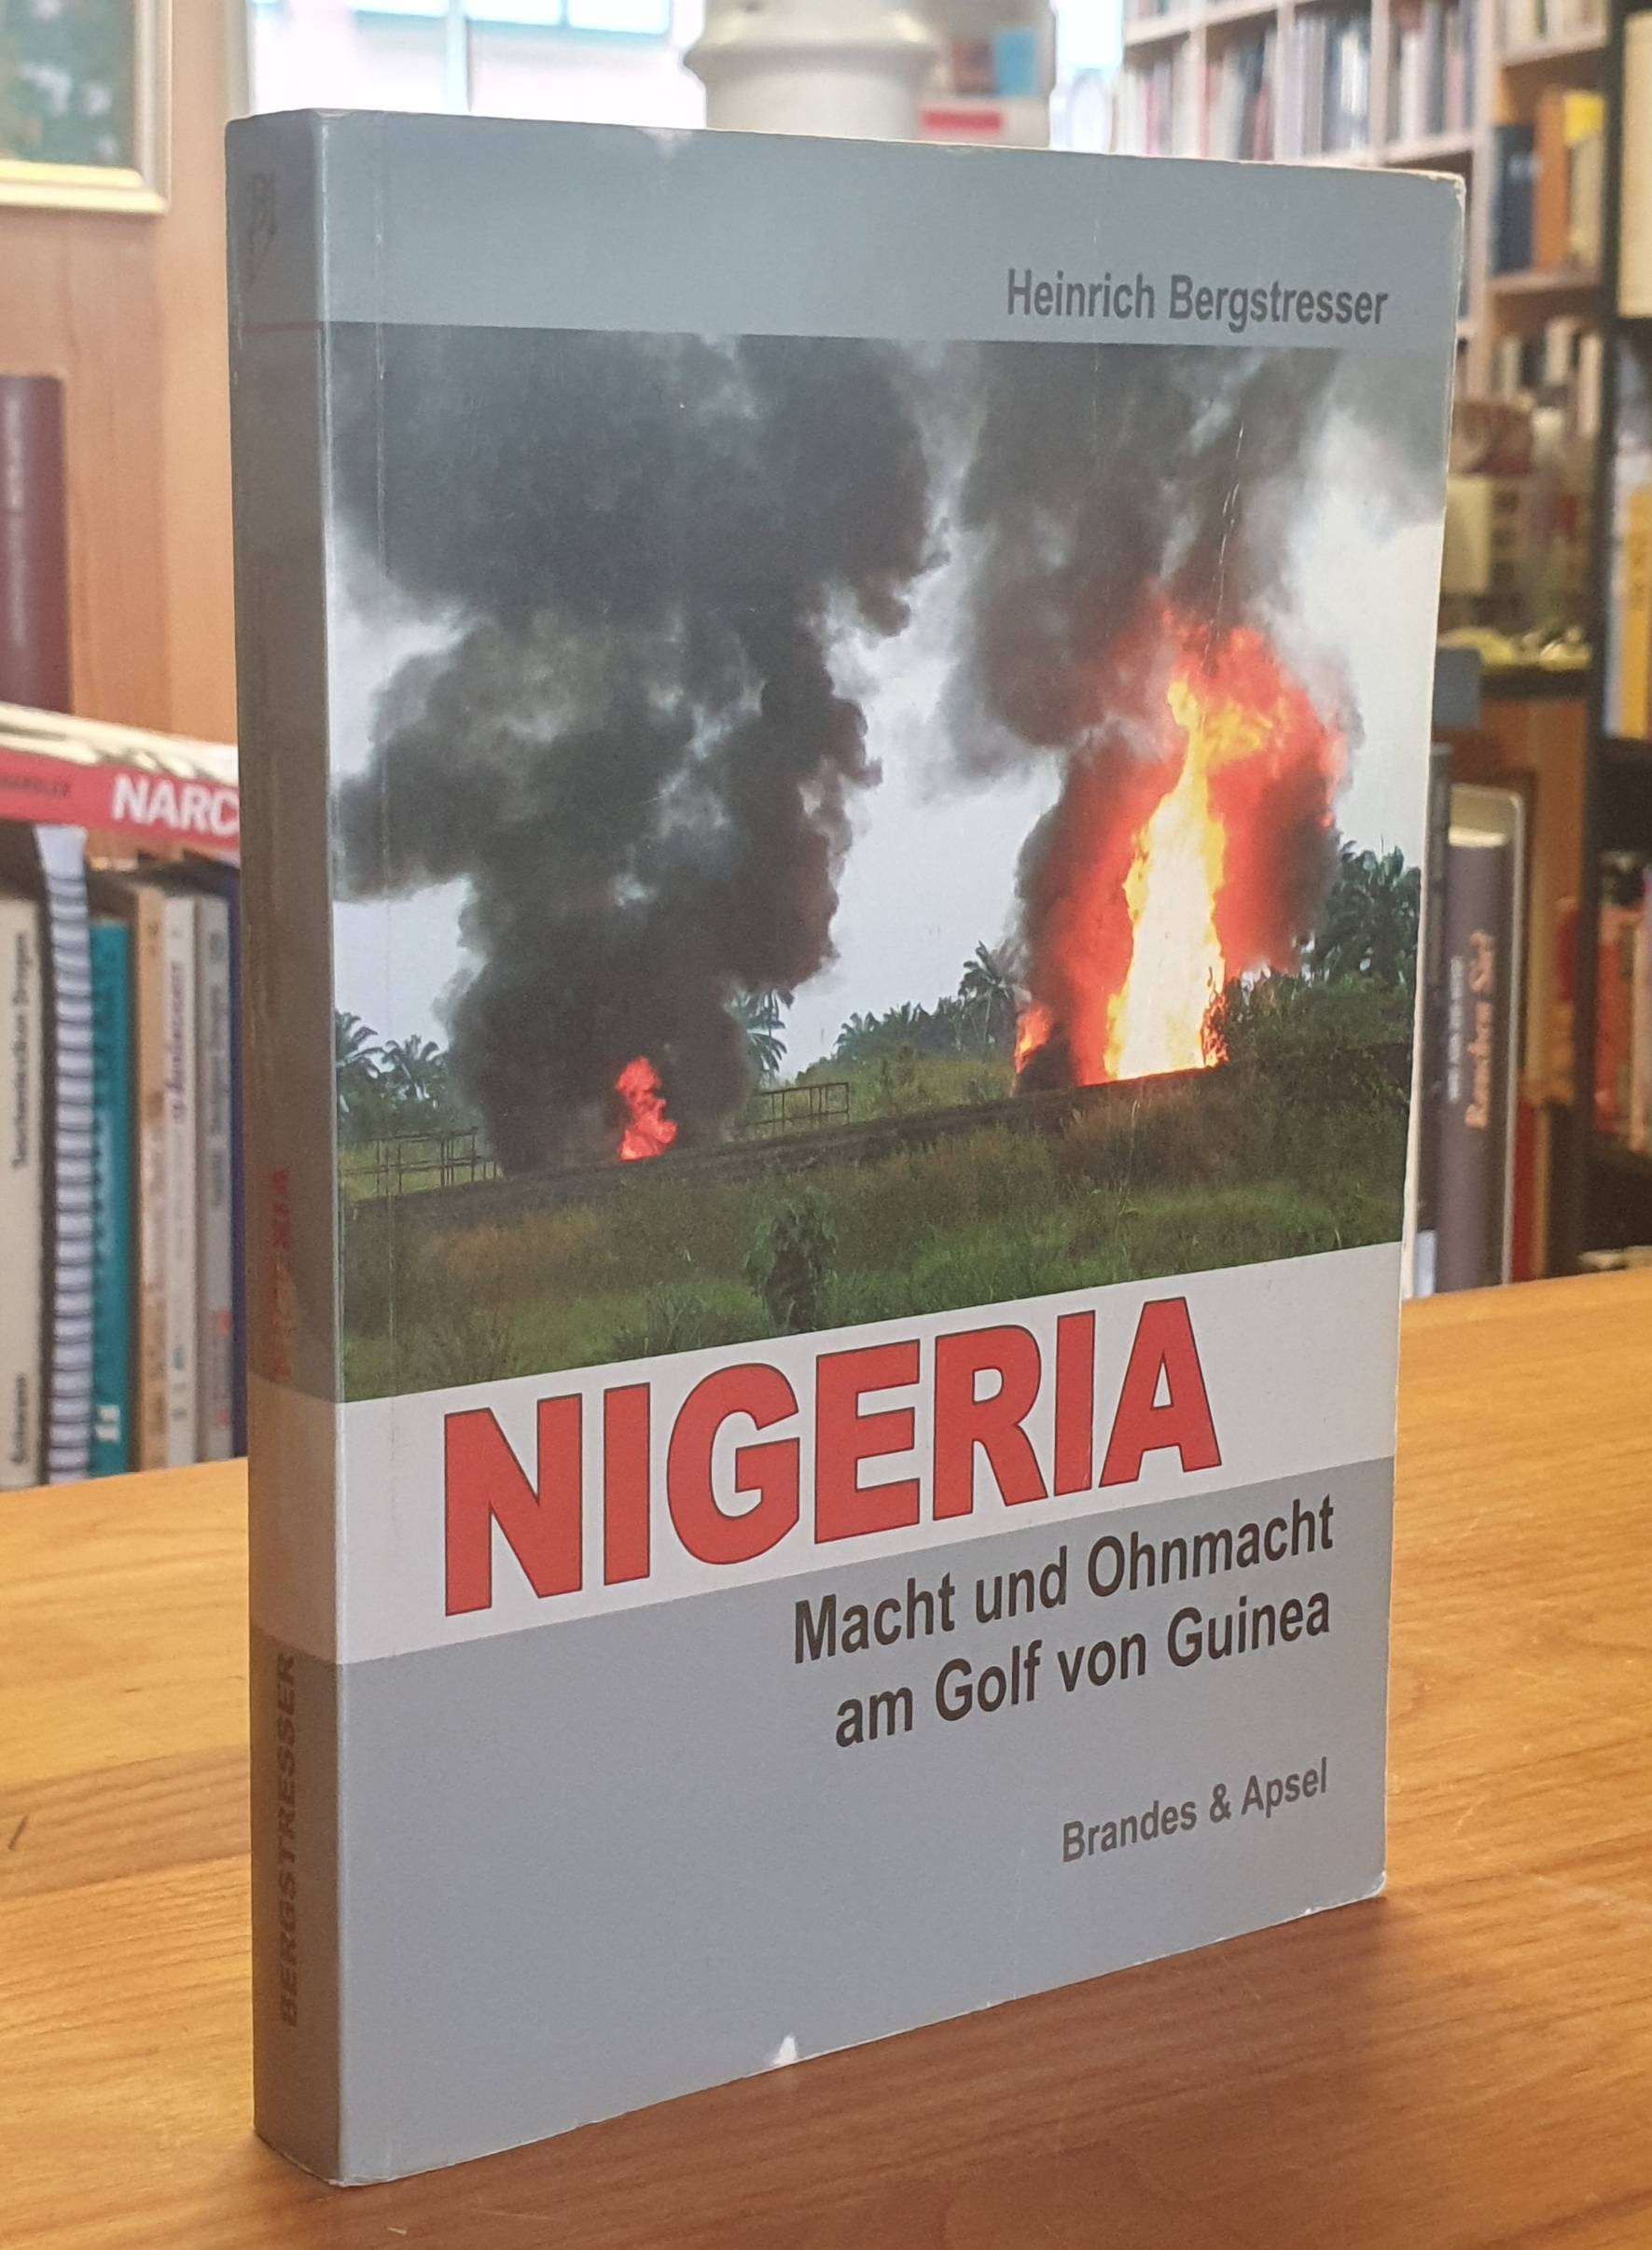 Nigeria: Macht und Ohnmacht am Golf von Guinea, - Nigeria / Heinrich Bergstresser,